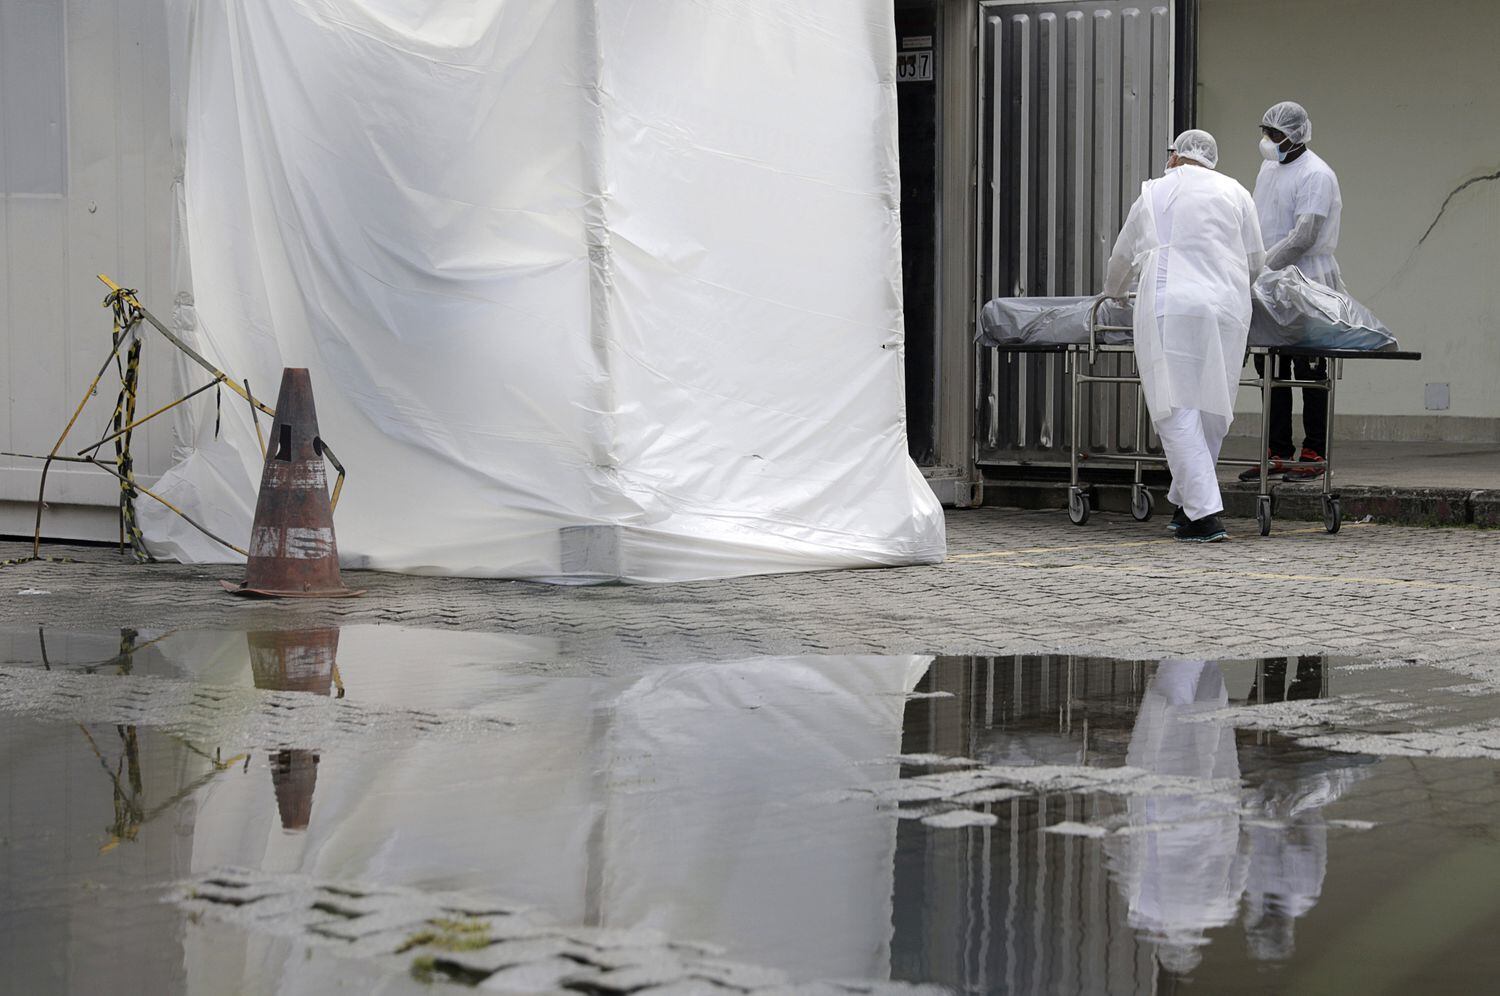 Profissionais de saúde vestindo equipamentos de proteção transportam o corpo de uma pessoa no Rio de Janeiro, em maio.